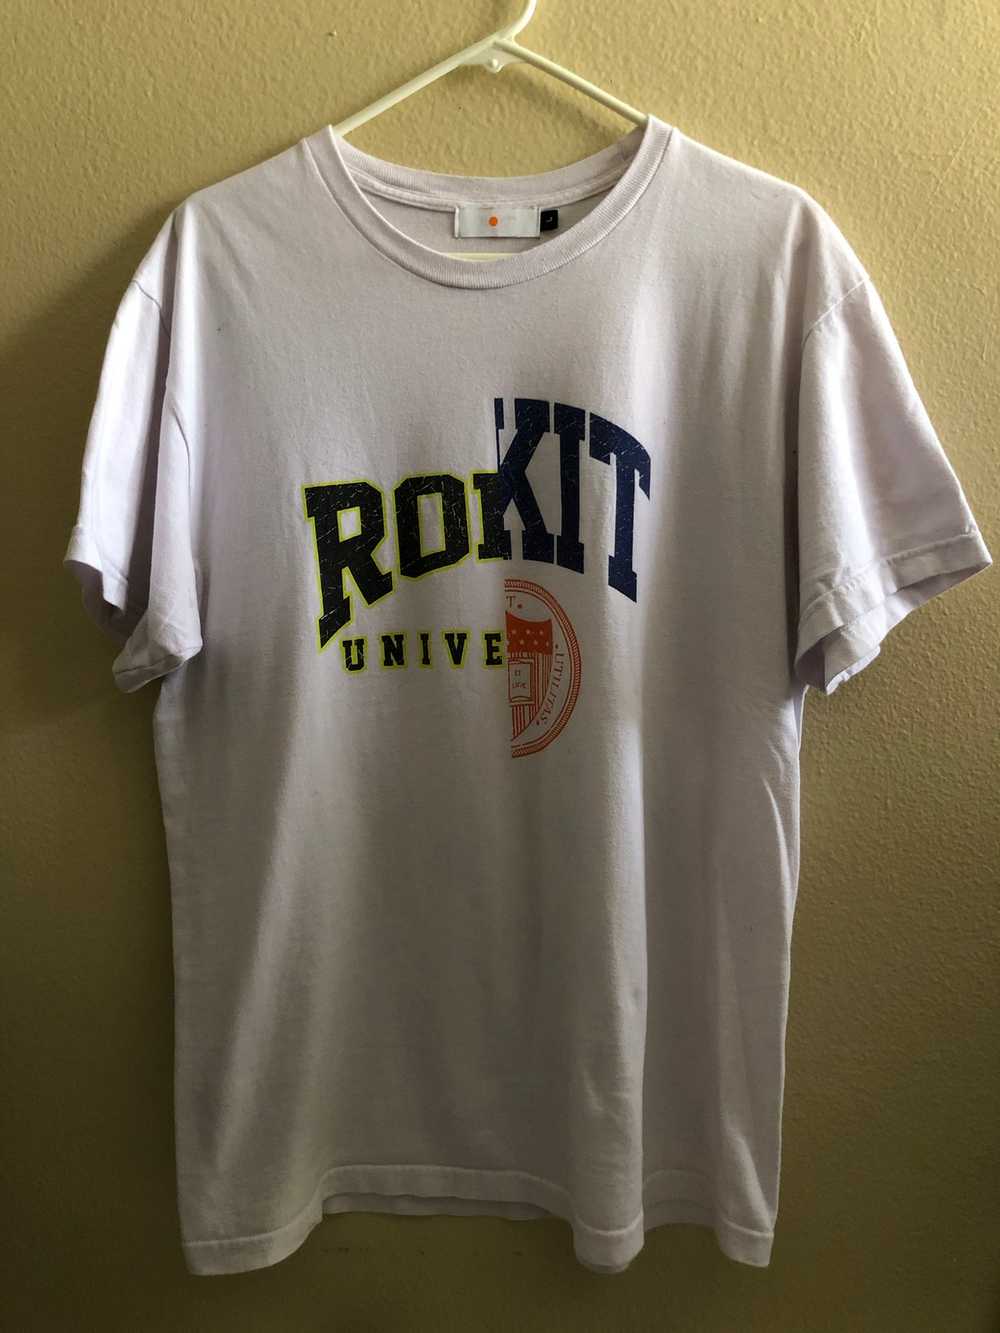 Rokit Rokit Split University T-Shirt - image 1